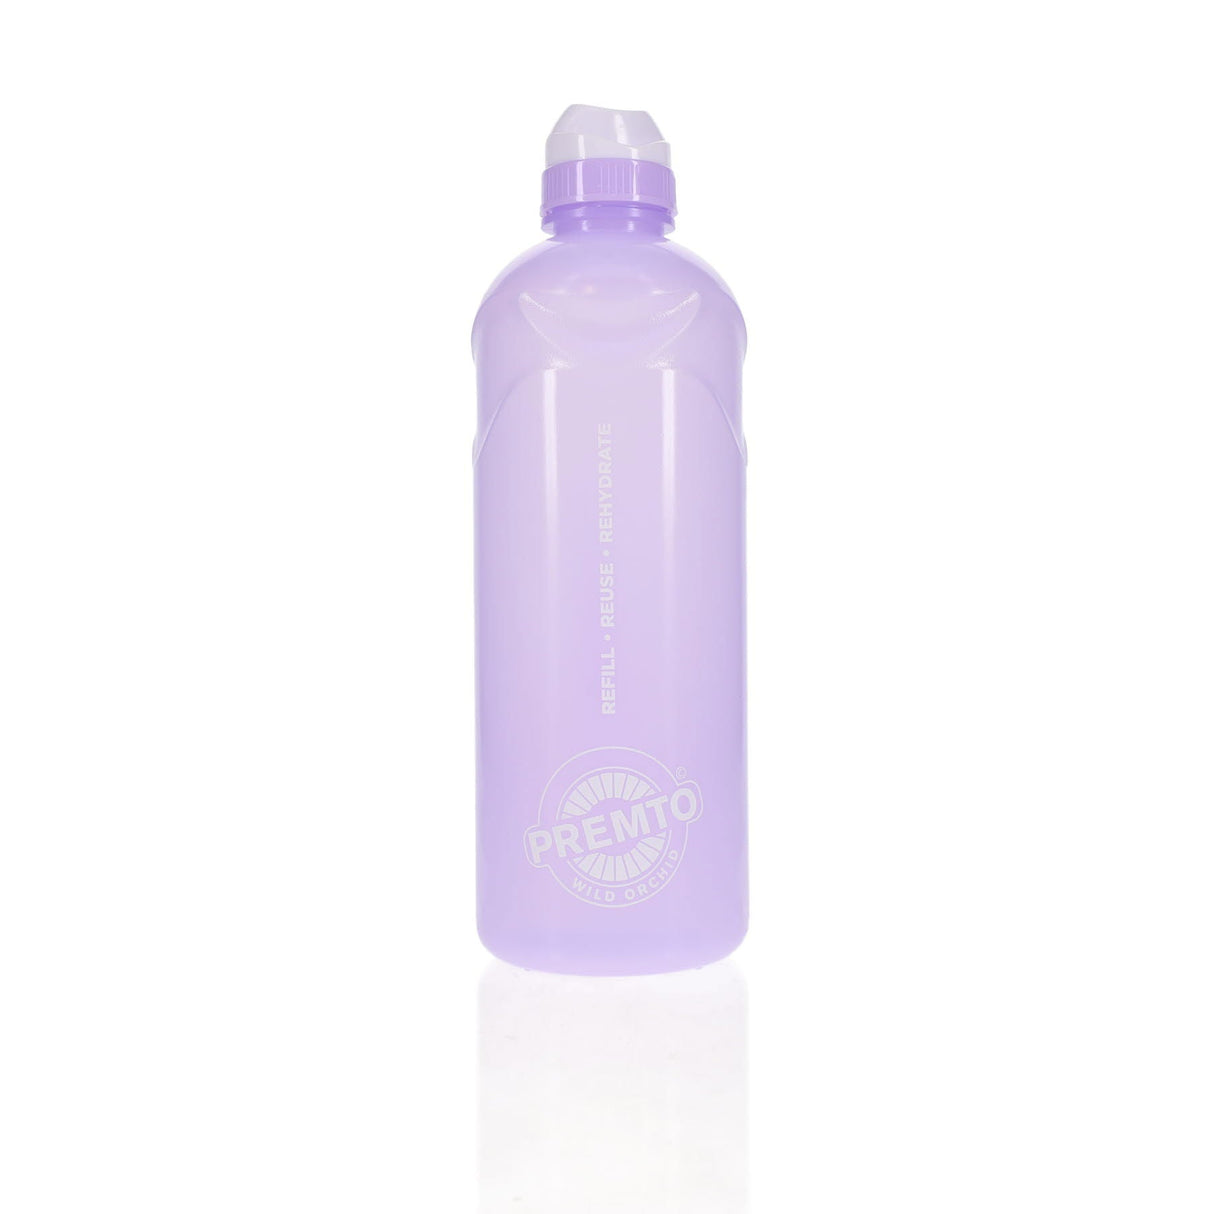 Premto Pastel 1 Litre Stealth Bottle - Wild Orchid | Stationery Shop UK